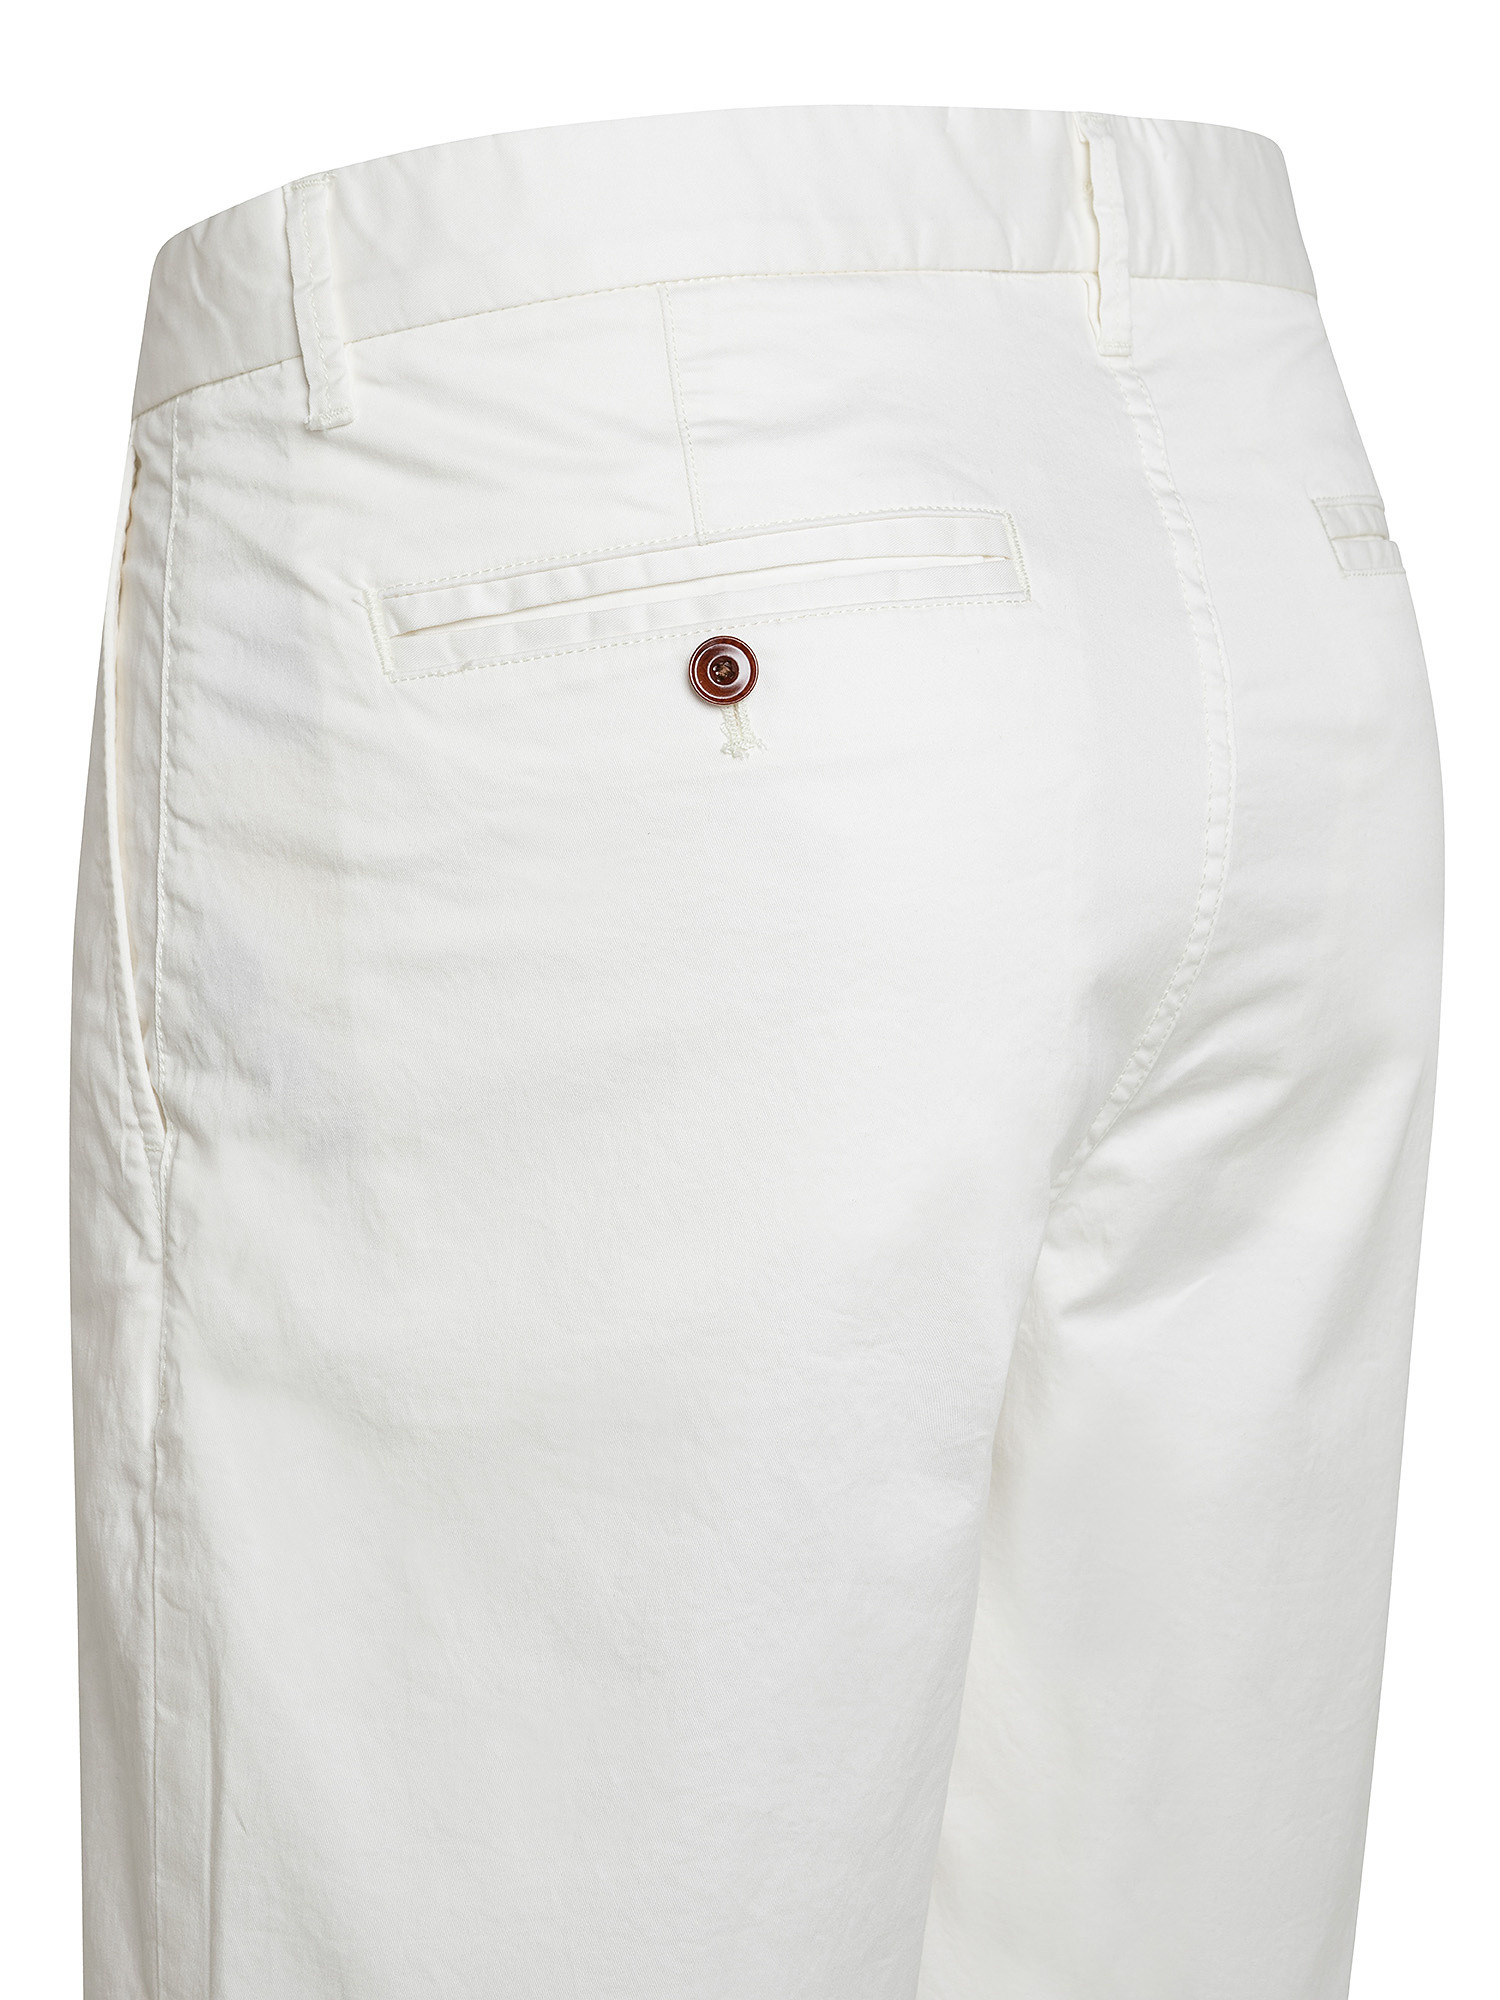 Chino shorts, White Ivory, large image number 2